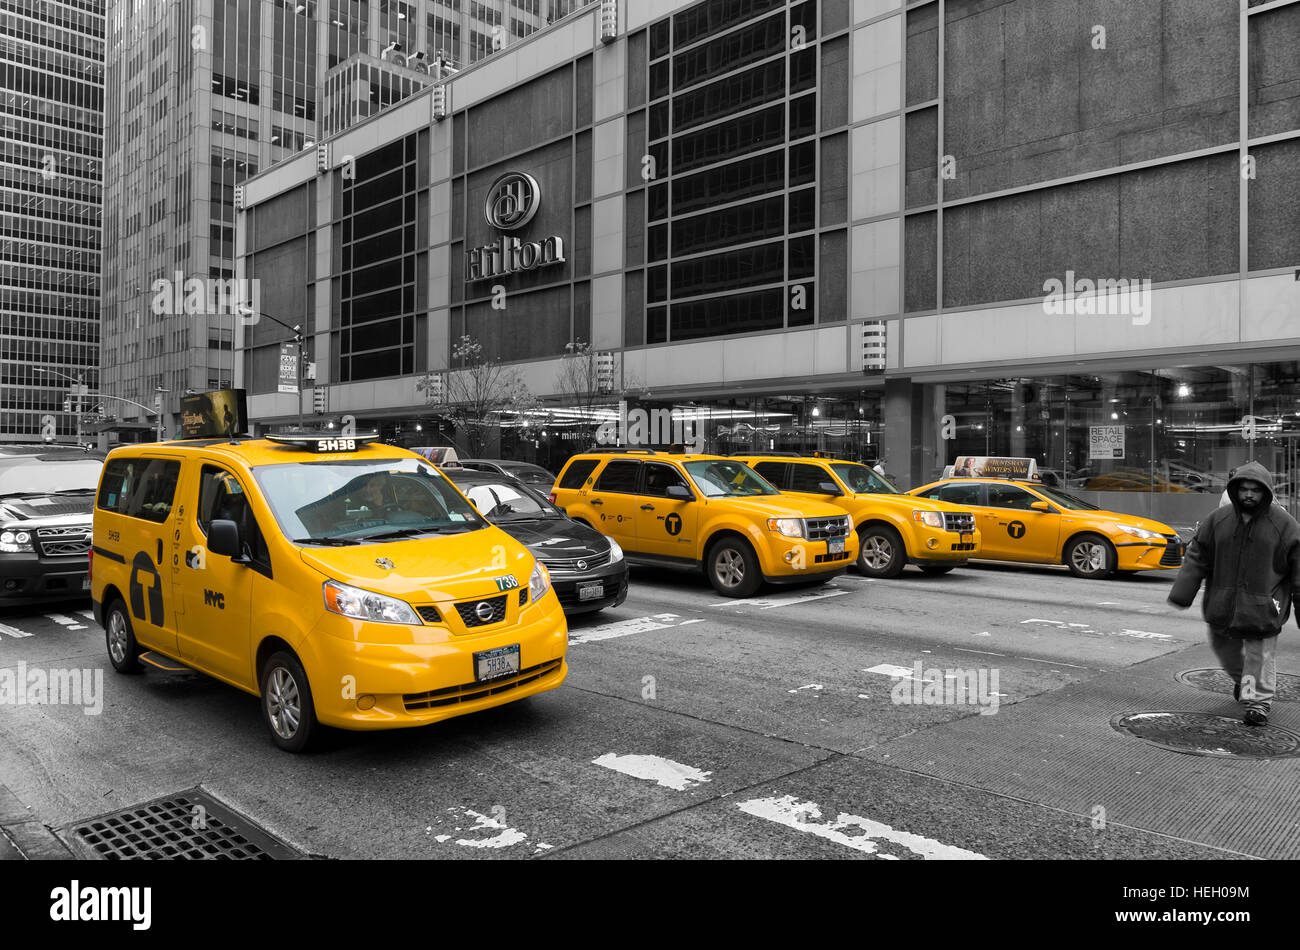 NEW YORK - 3 Maggio 2016: di solito giallo medaglione taxicabs davanti al New York Hilton. Essi sono ampiamente riconosciute icone della città e venite in Foto Stock